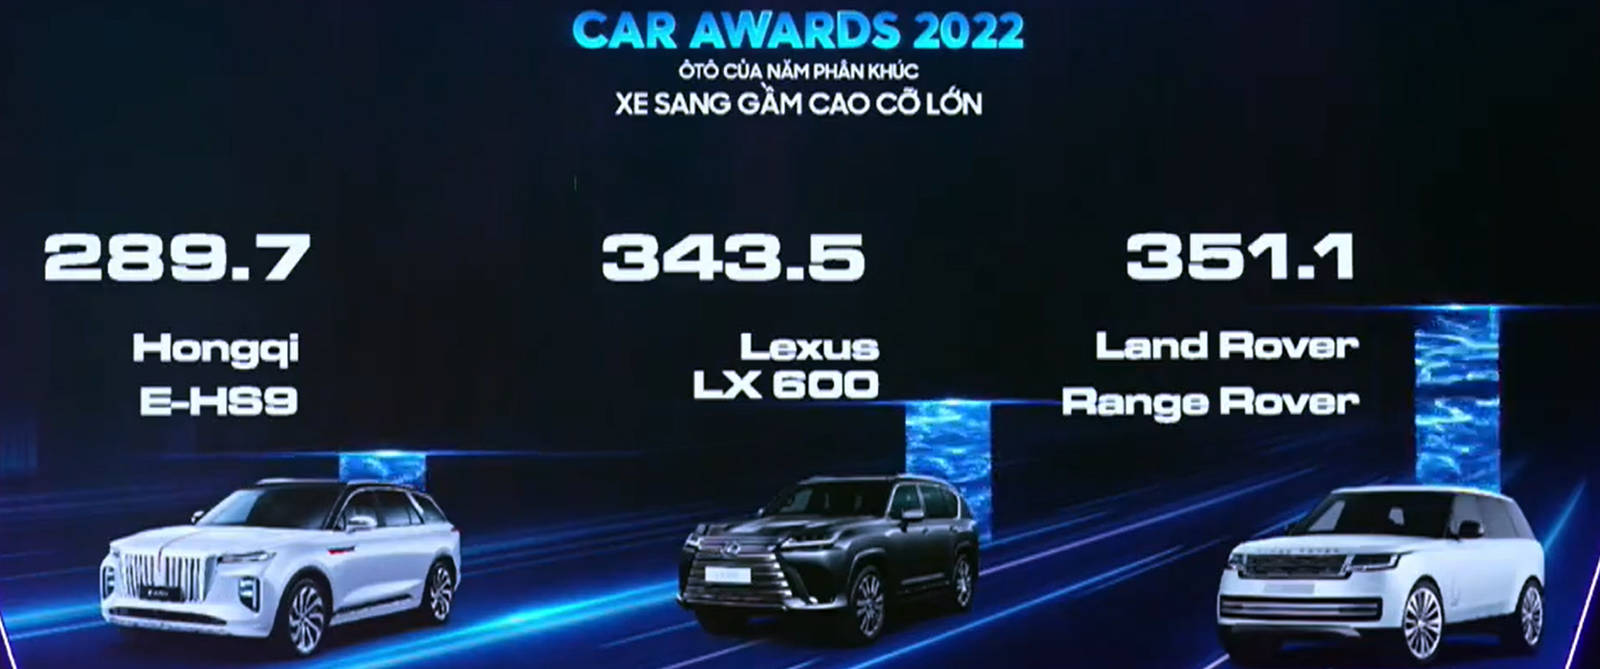 car-awards2022-06.jpg